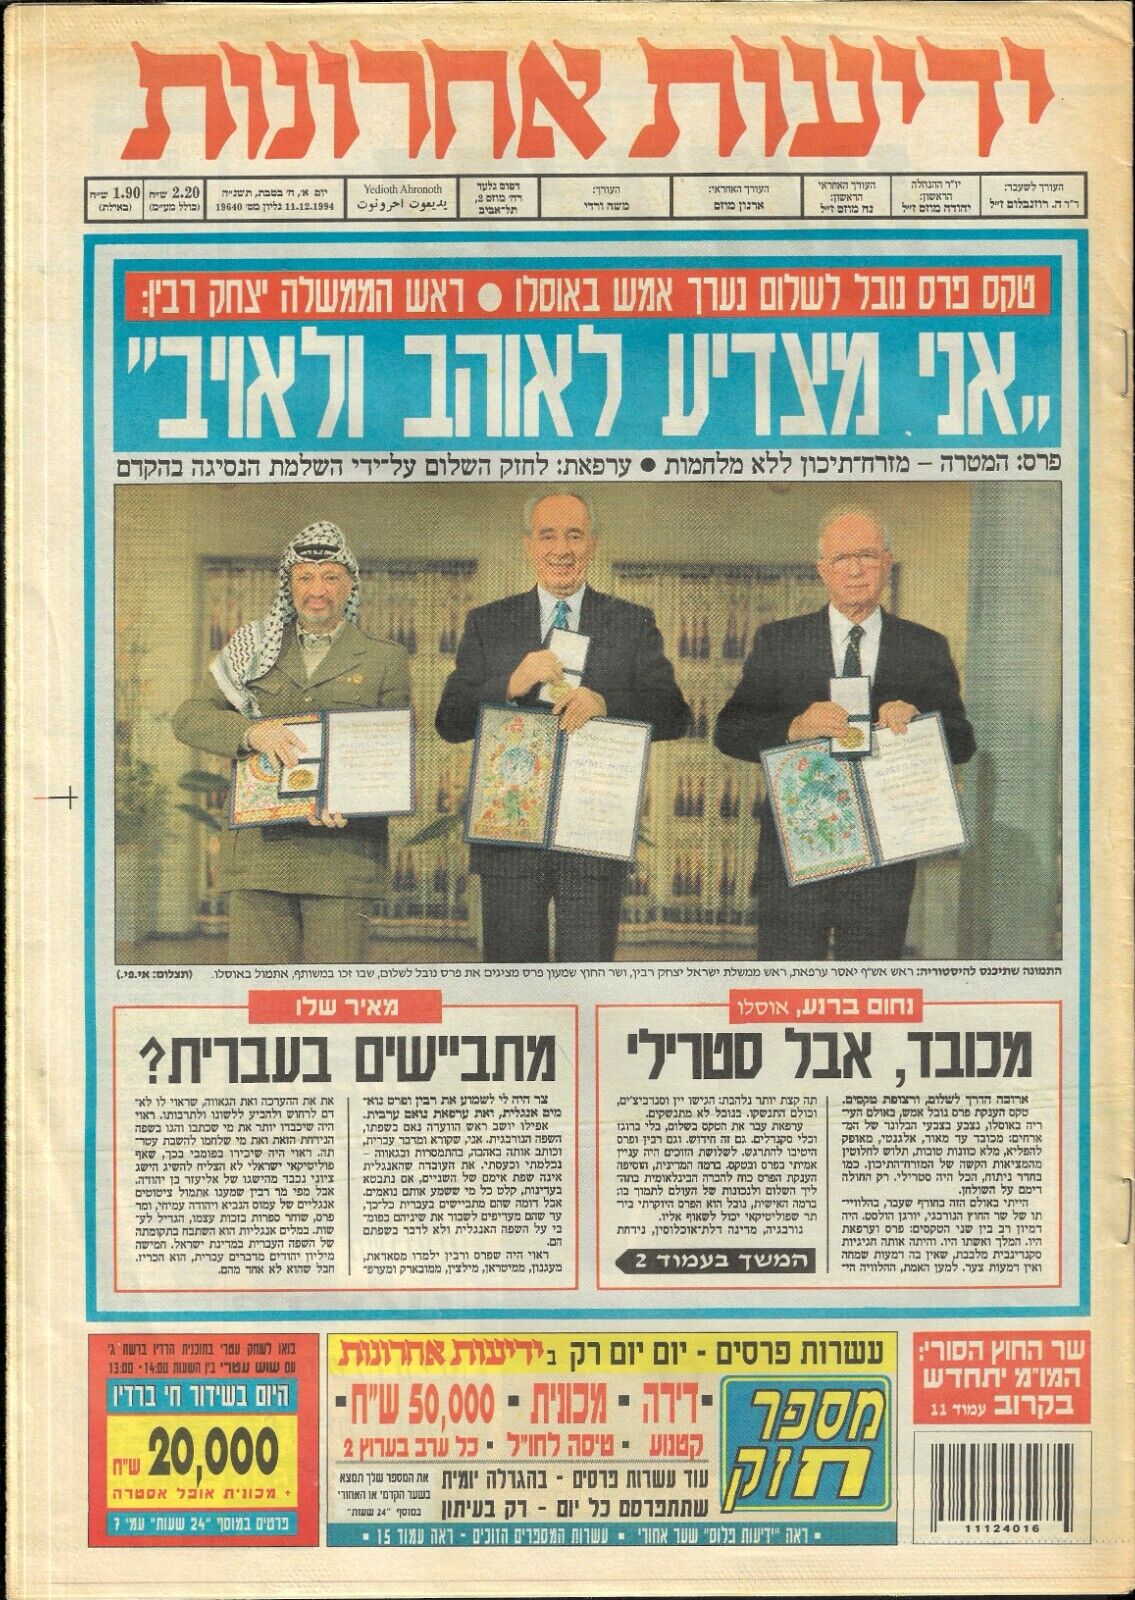 YITZHAK RABIN and SHIMON PERES NOBEL PEACE PRIZE CERAMONY Israeli Newspaper 1994